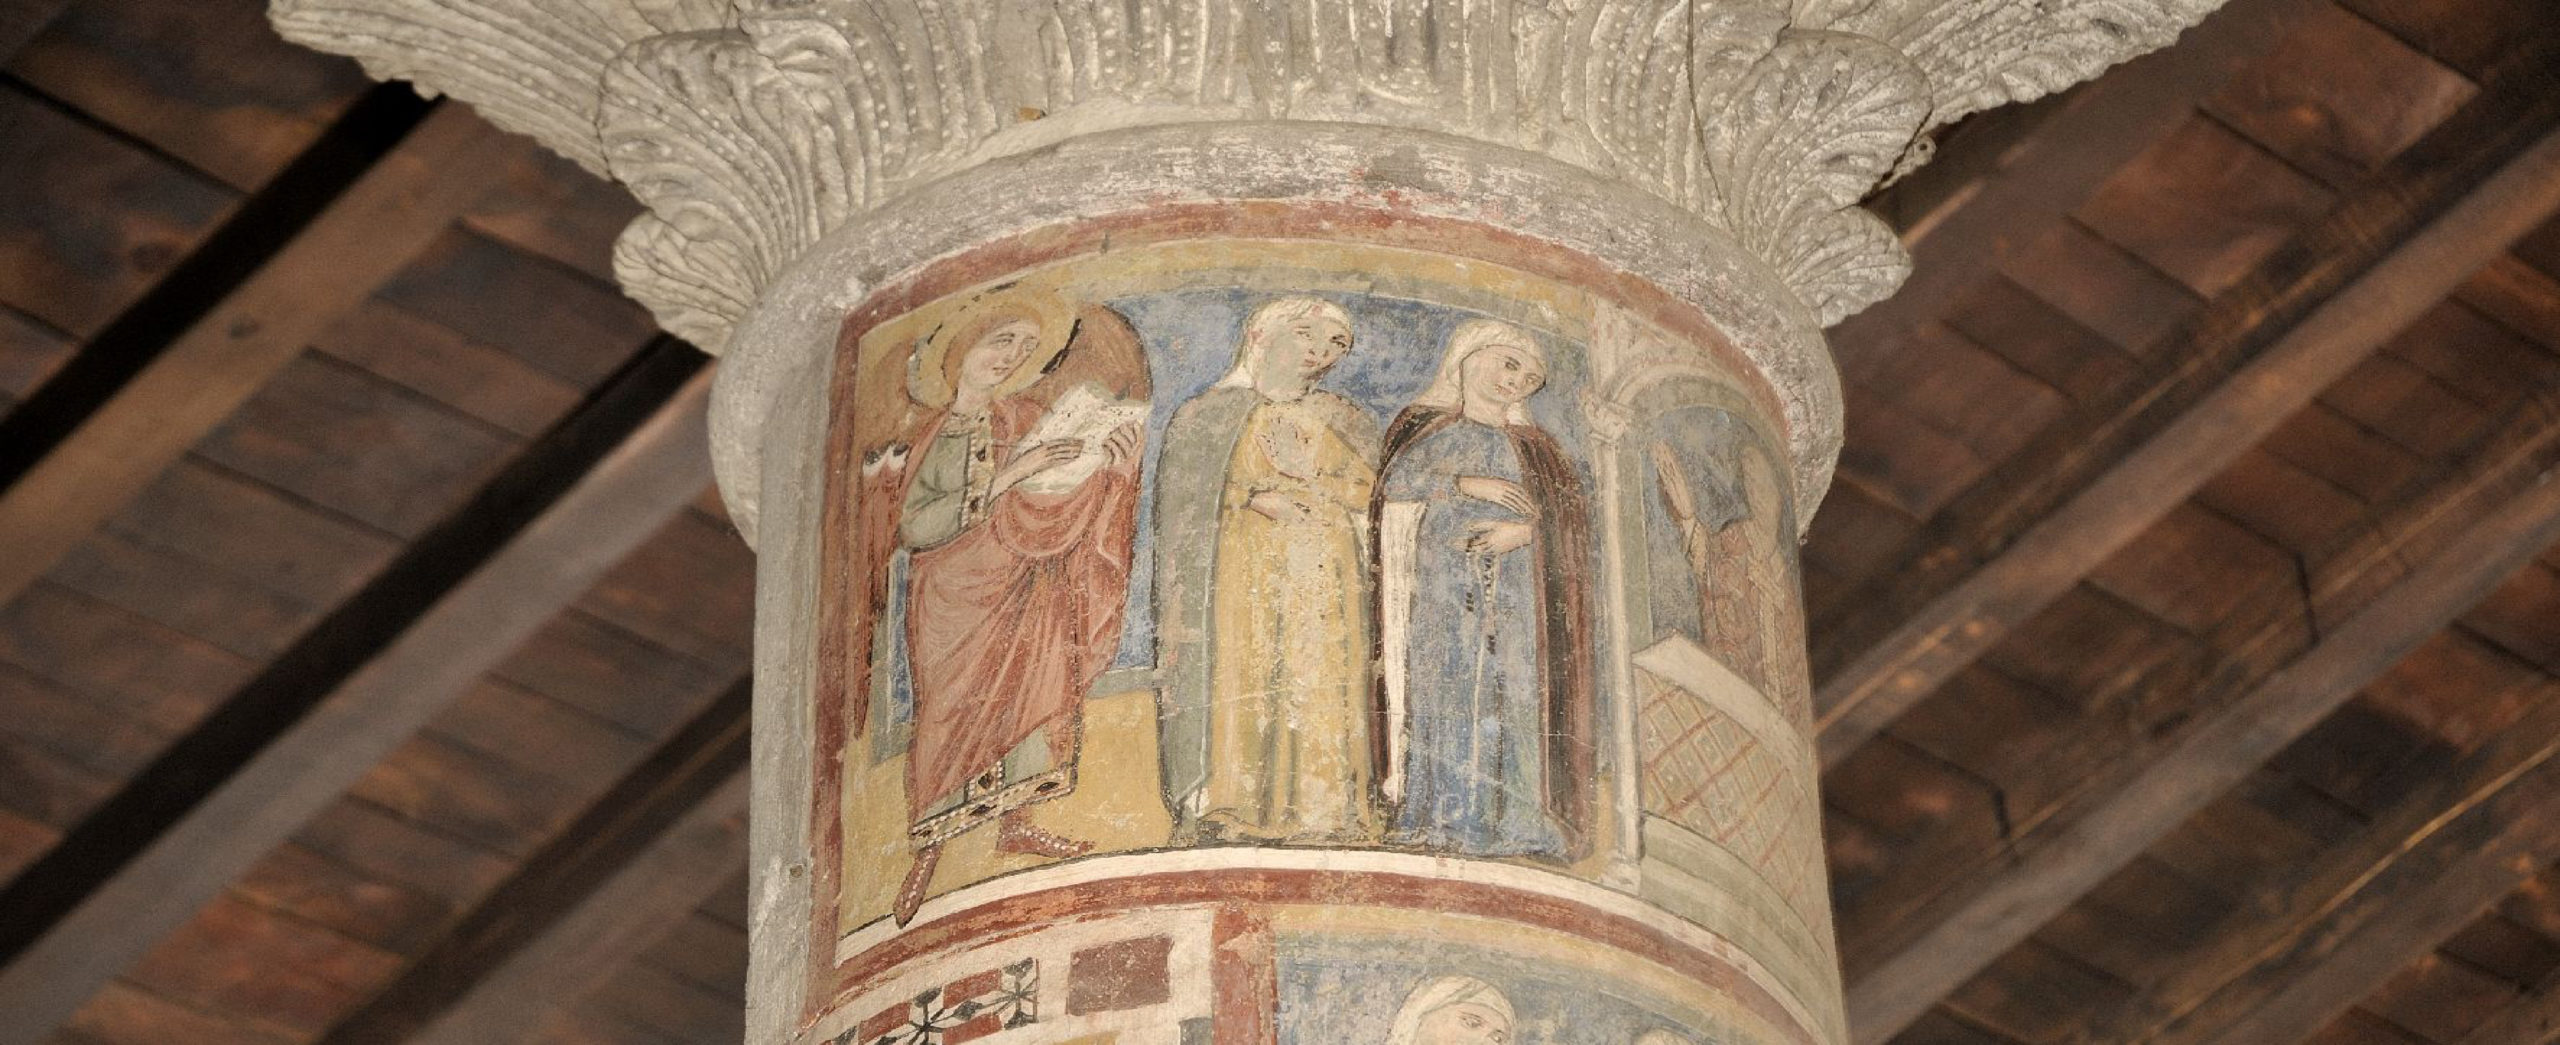 Tuscania - Capitello dipinto in Santa Maria Maggiore